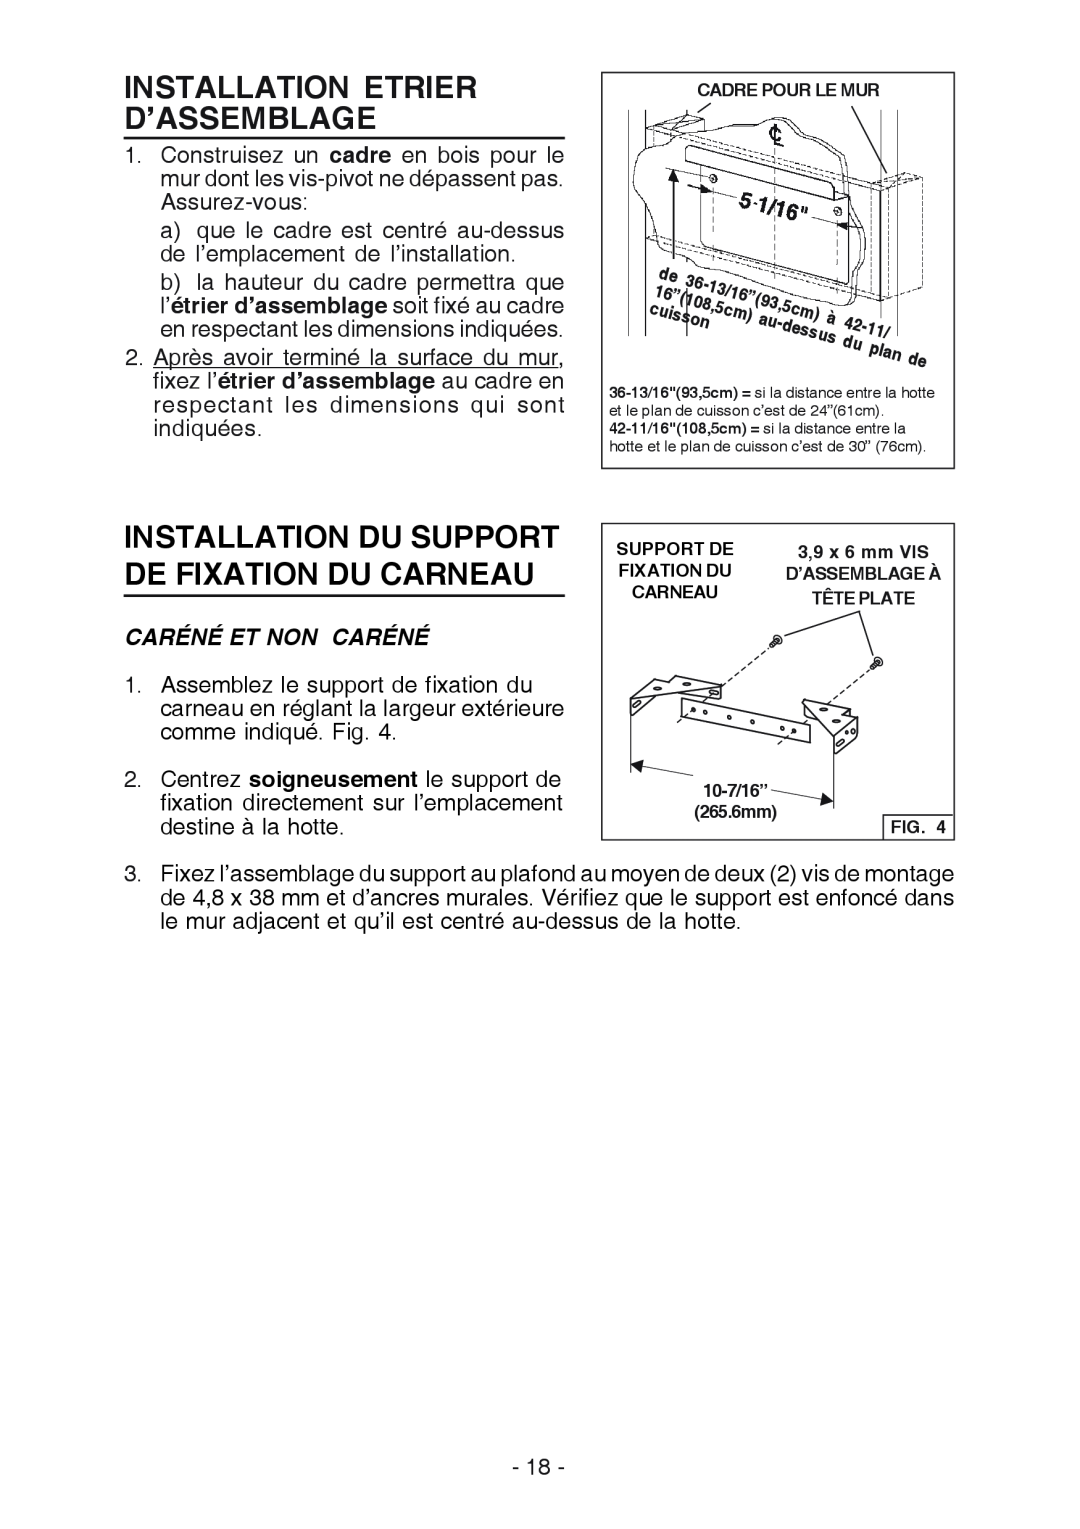 Broan K7388 manual Installation Etrier D’Assemblage, Installation Du Support De Fixation Du Carneau, Caréné Et Non Caréné 